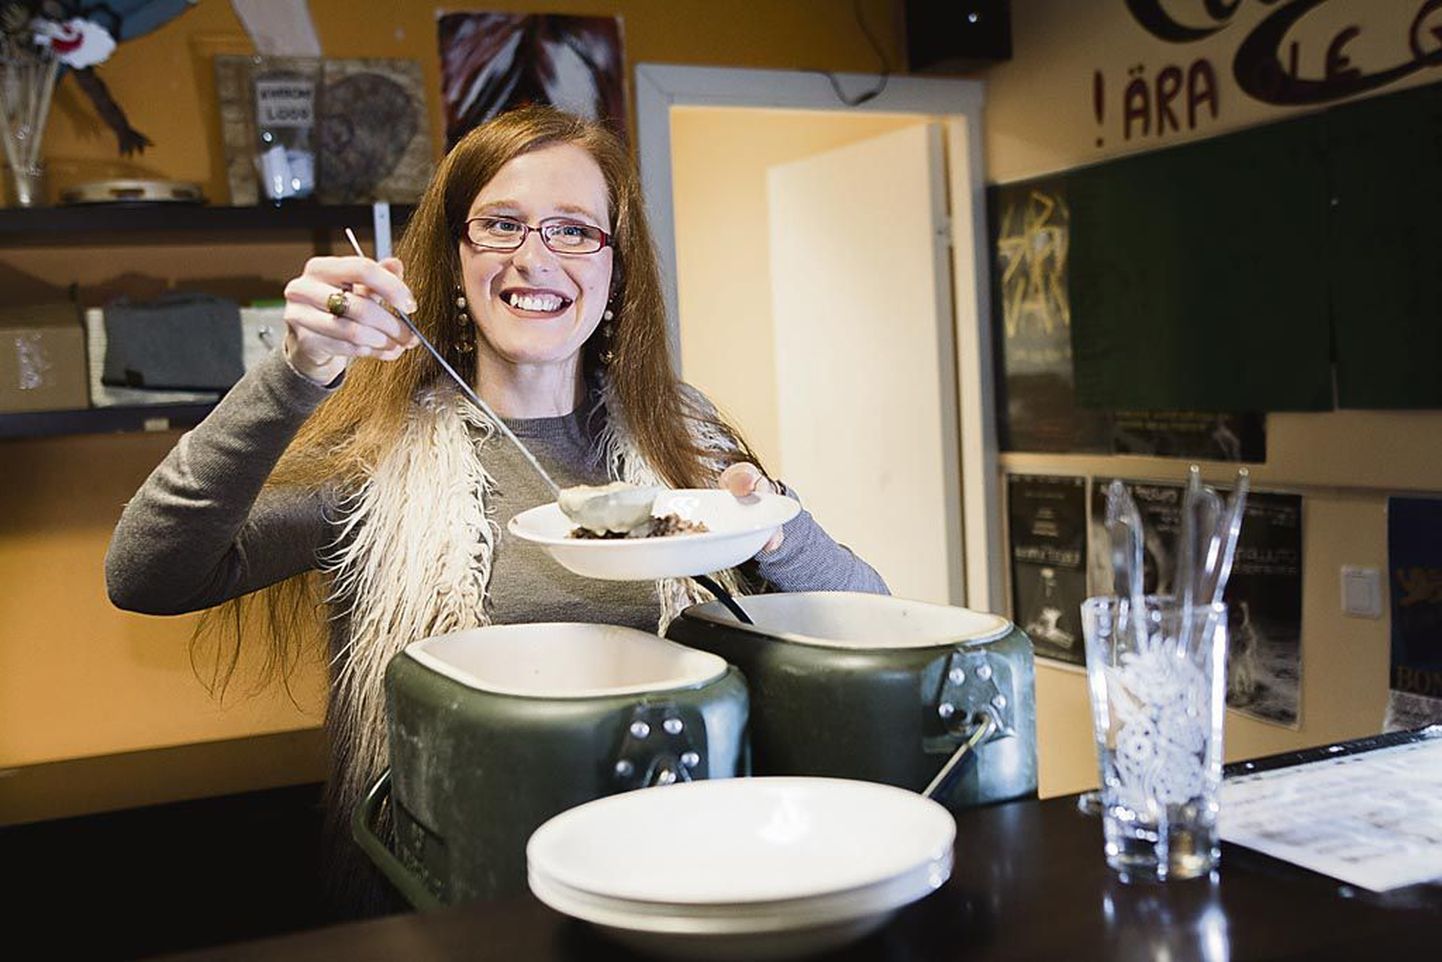 Pärnu noorte vabaajakeskuse noorsootöötaja Triin Mäger ulatamas tatart soustiga. Keskus pakub koolivaheajal tööpäeviti lastele ja noortele sooja toitu, mille on valmistanud Riia söögituba.